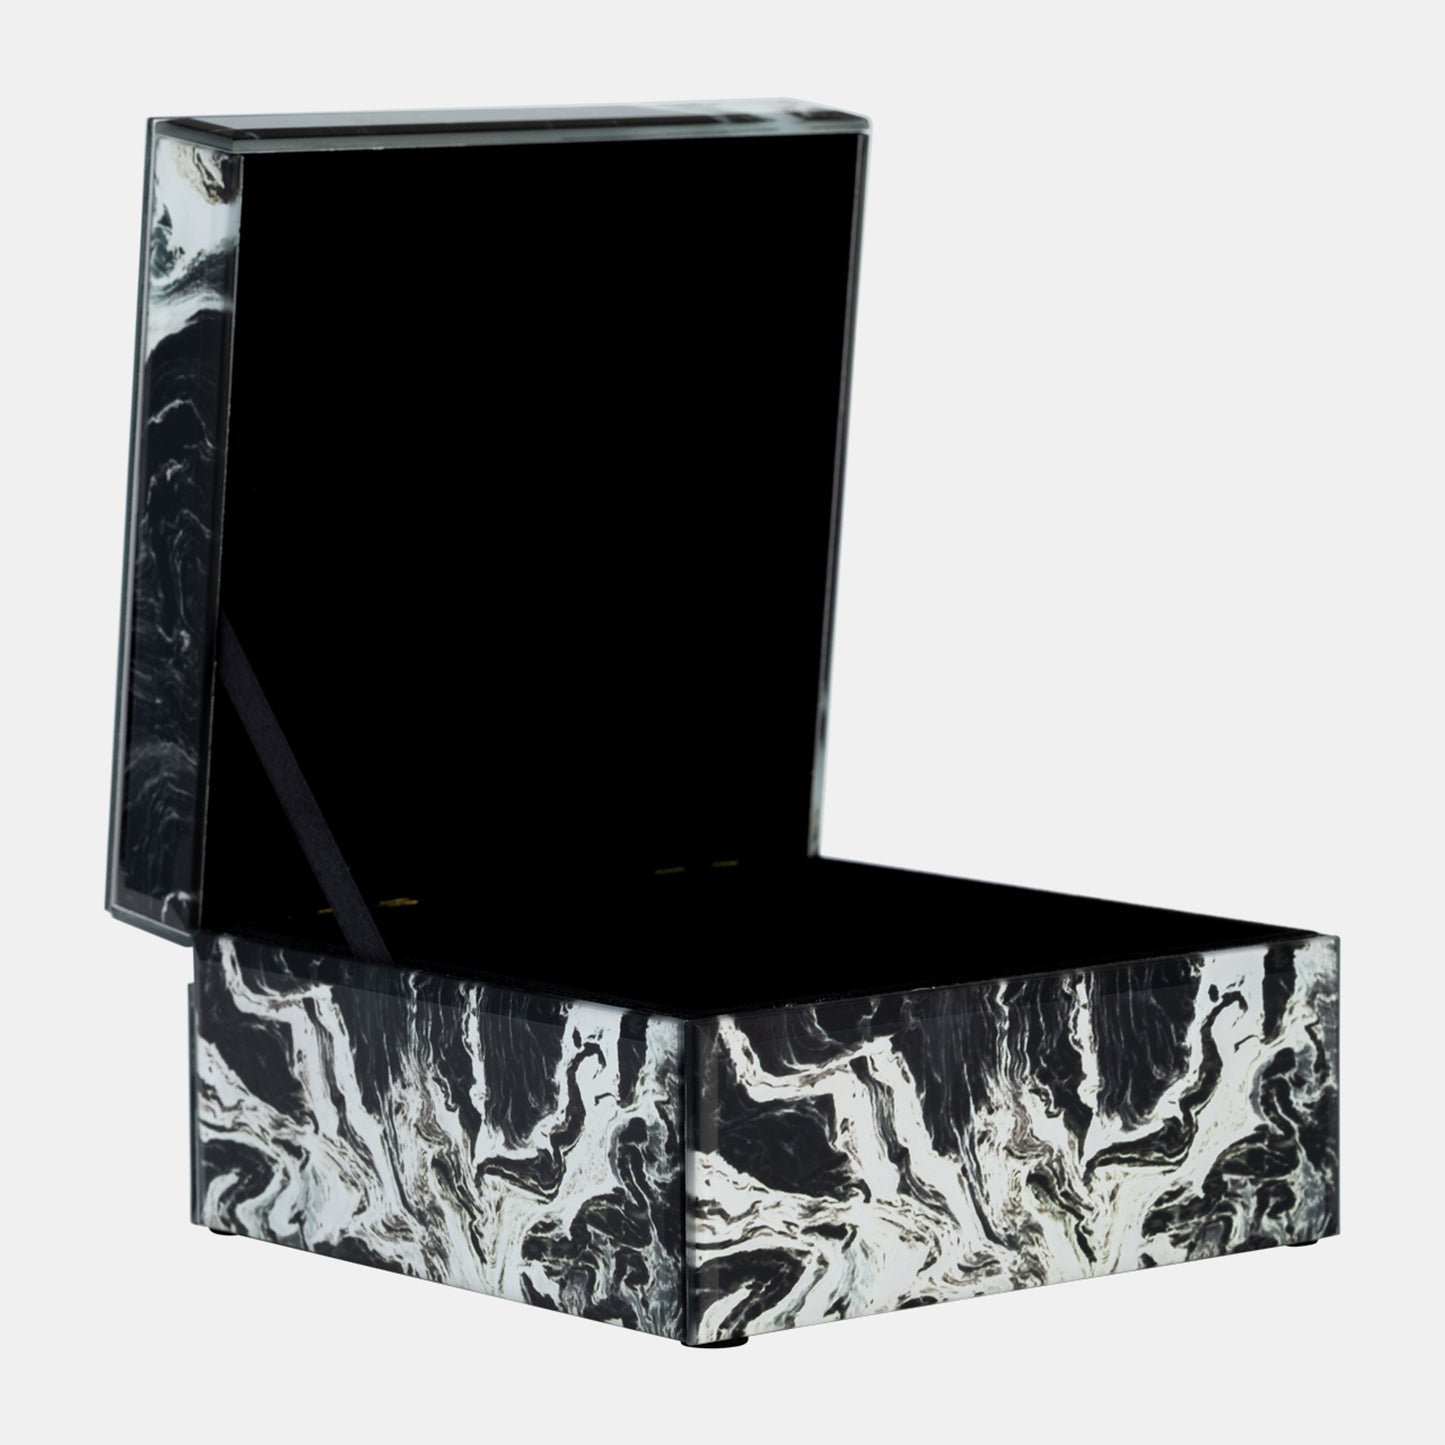 6 x 5 In Jewelry Box Quartz Top, Black